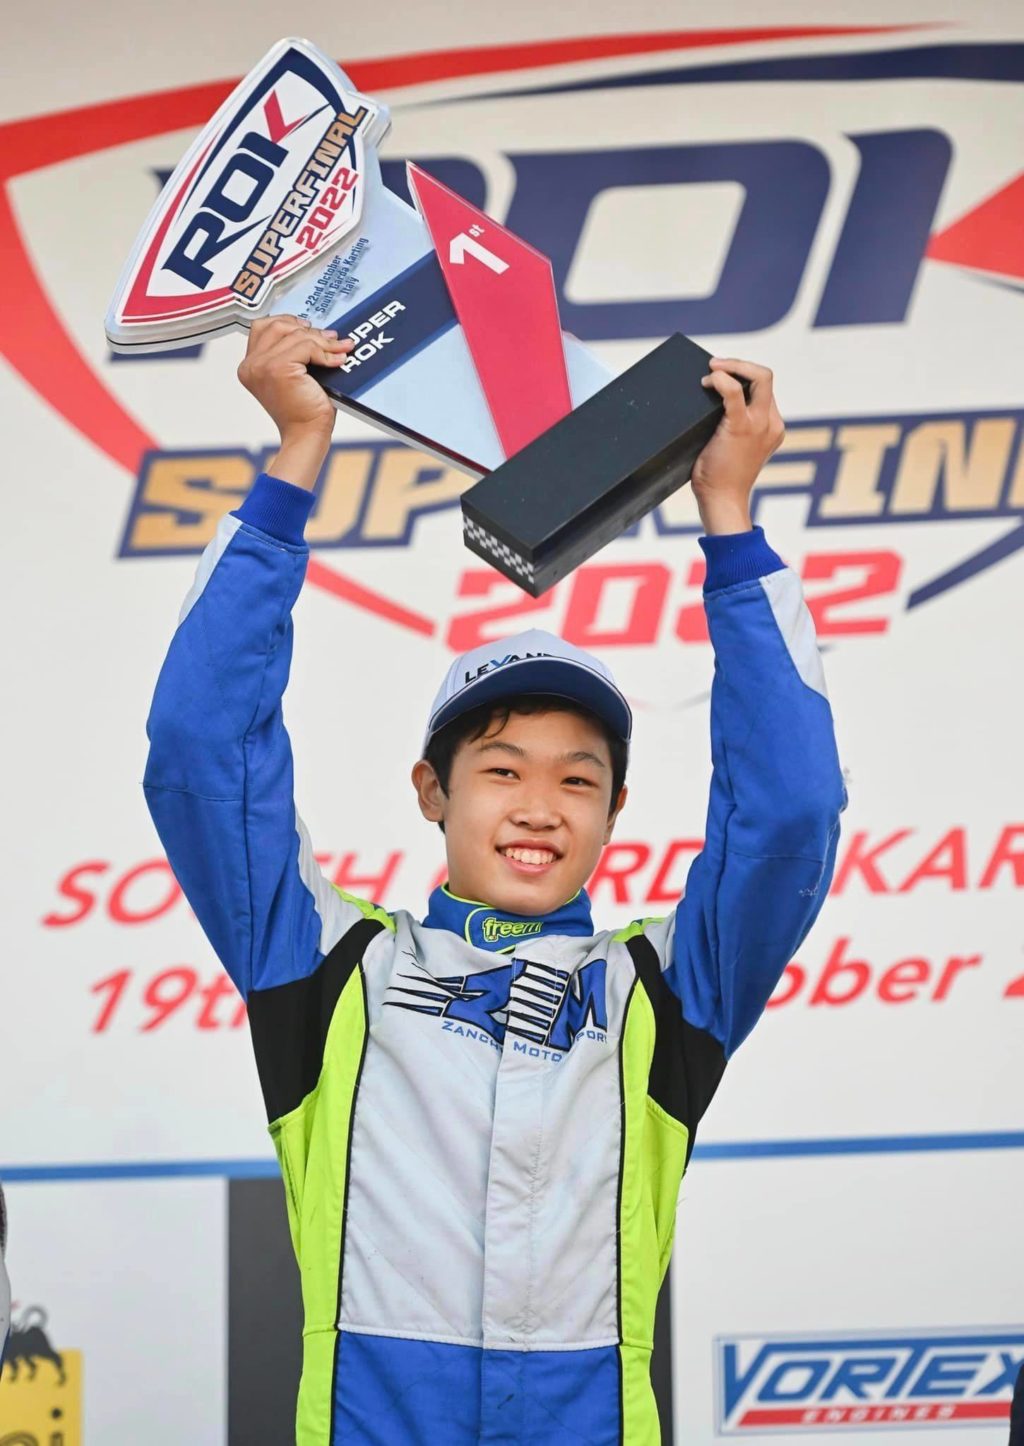 El karter de Cebuano William John Riley Co obtuvo el primer lugar en la OK Super Final 2022 en South Garda Karting en Lonato, Italia durante el fin de semana.  |  Fotos de la página de Facebook de Go